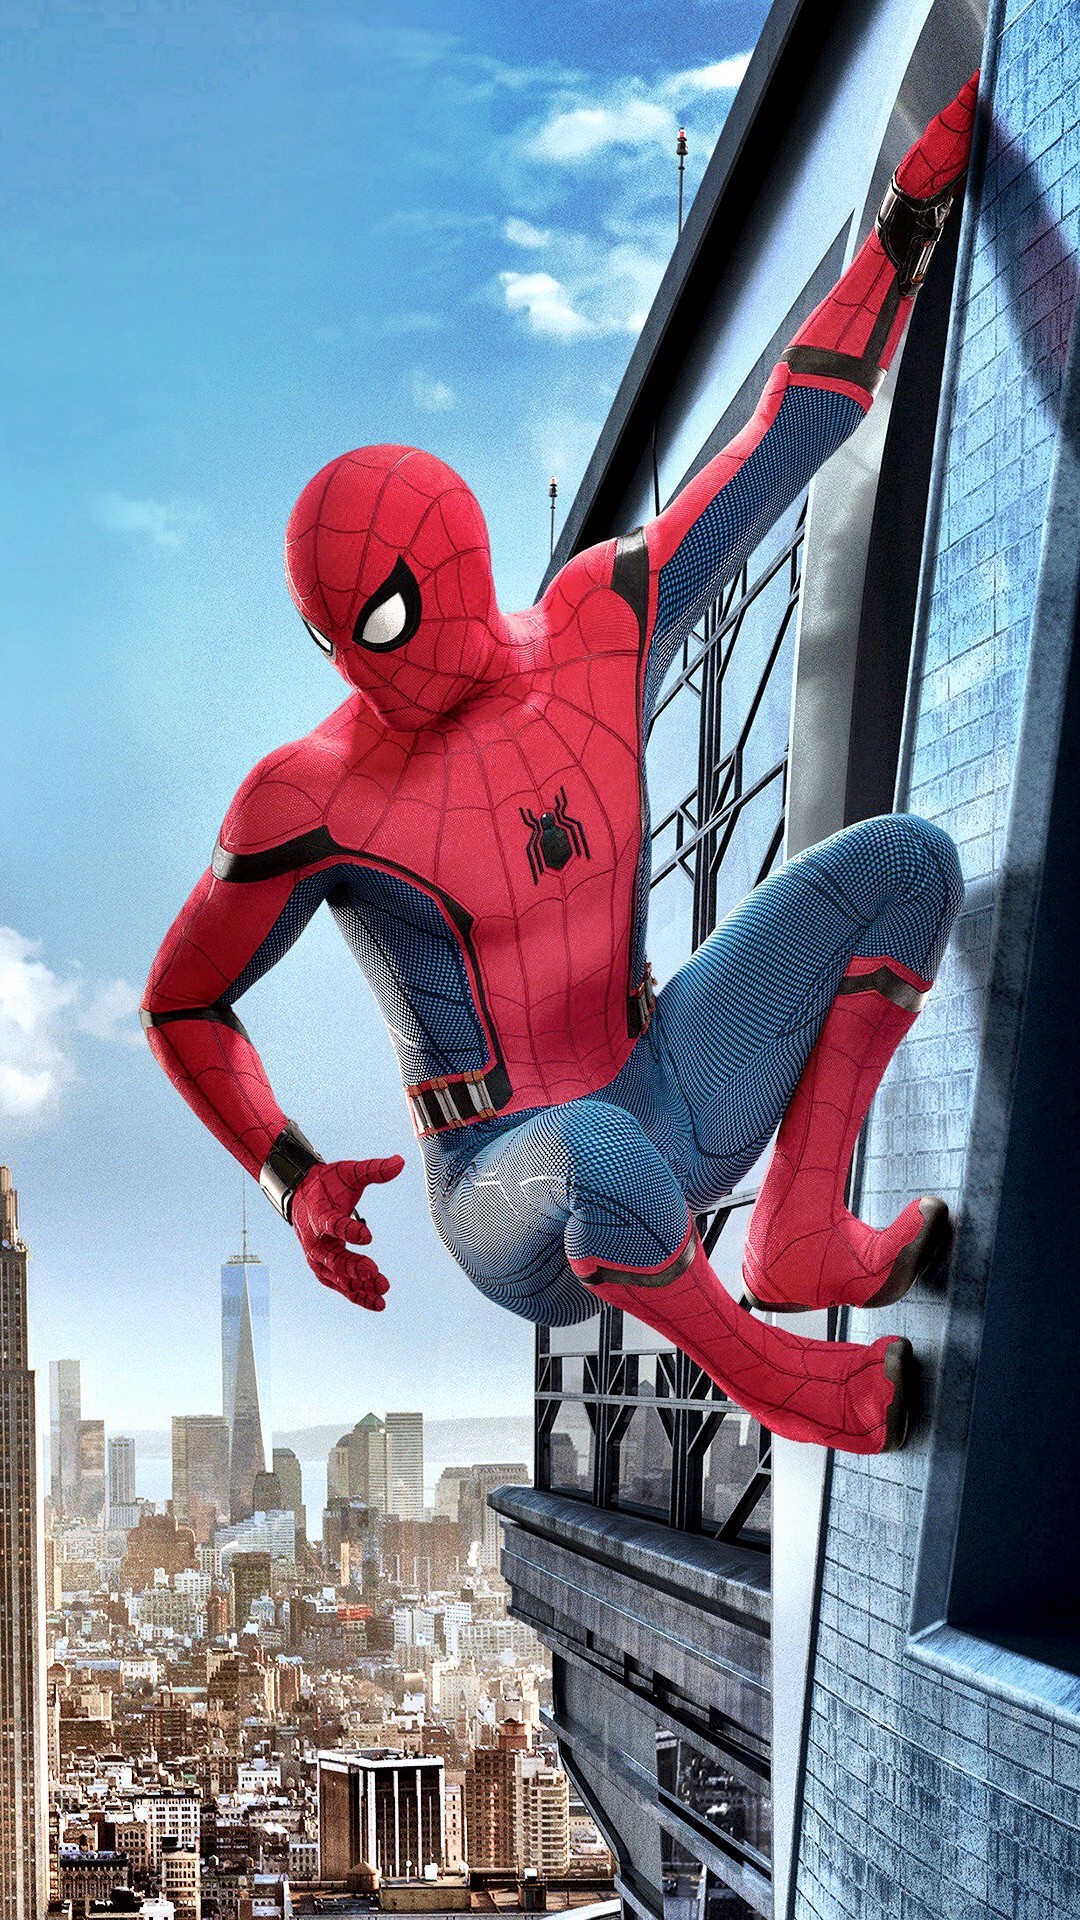 fond d'écran spiderman homecoming hd,homme araignée,super héros,personnage fictif,héros